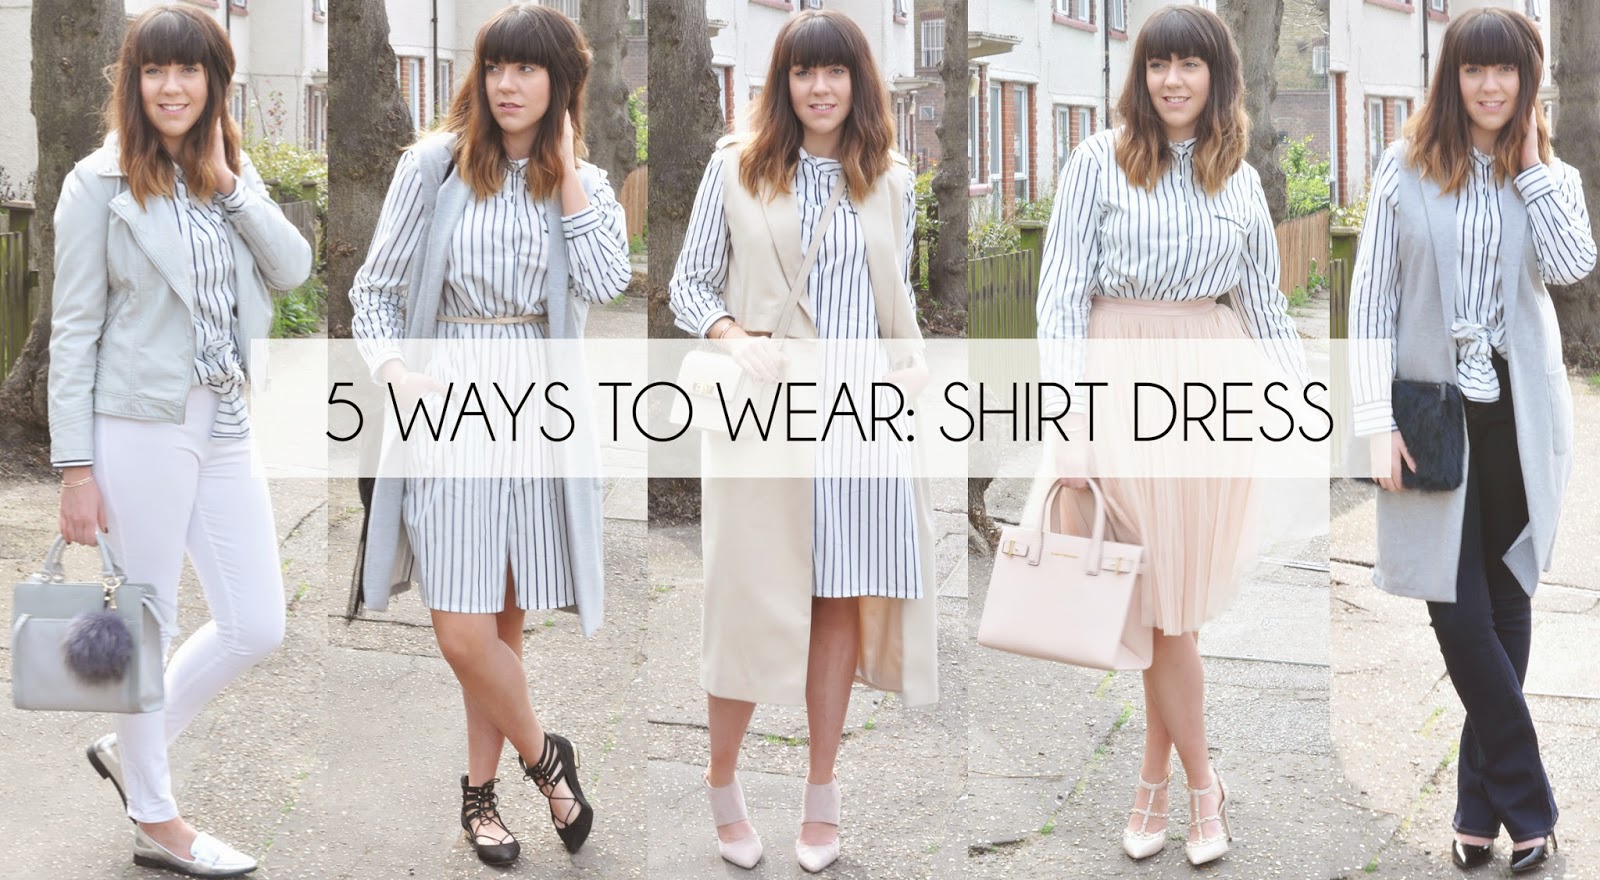 5 WAYS TO WEAR: SHIRT DRESS